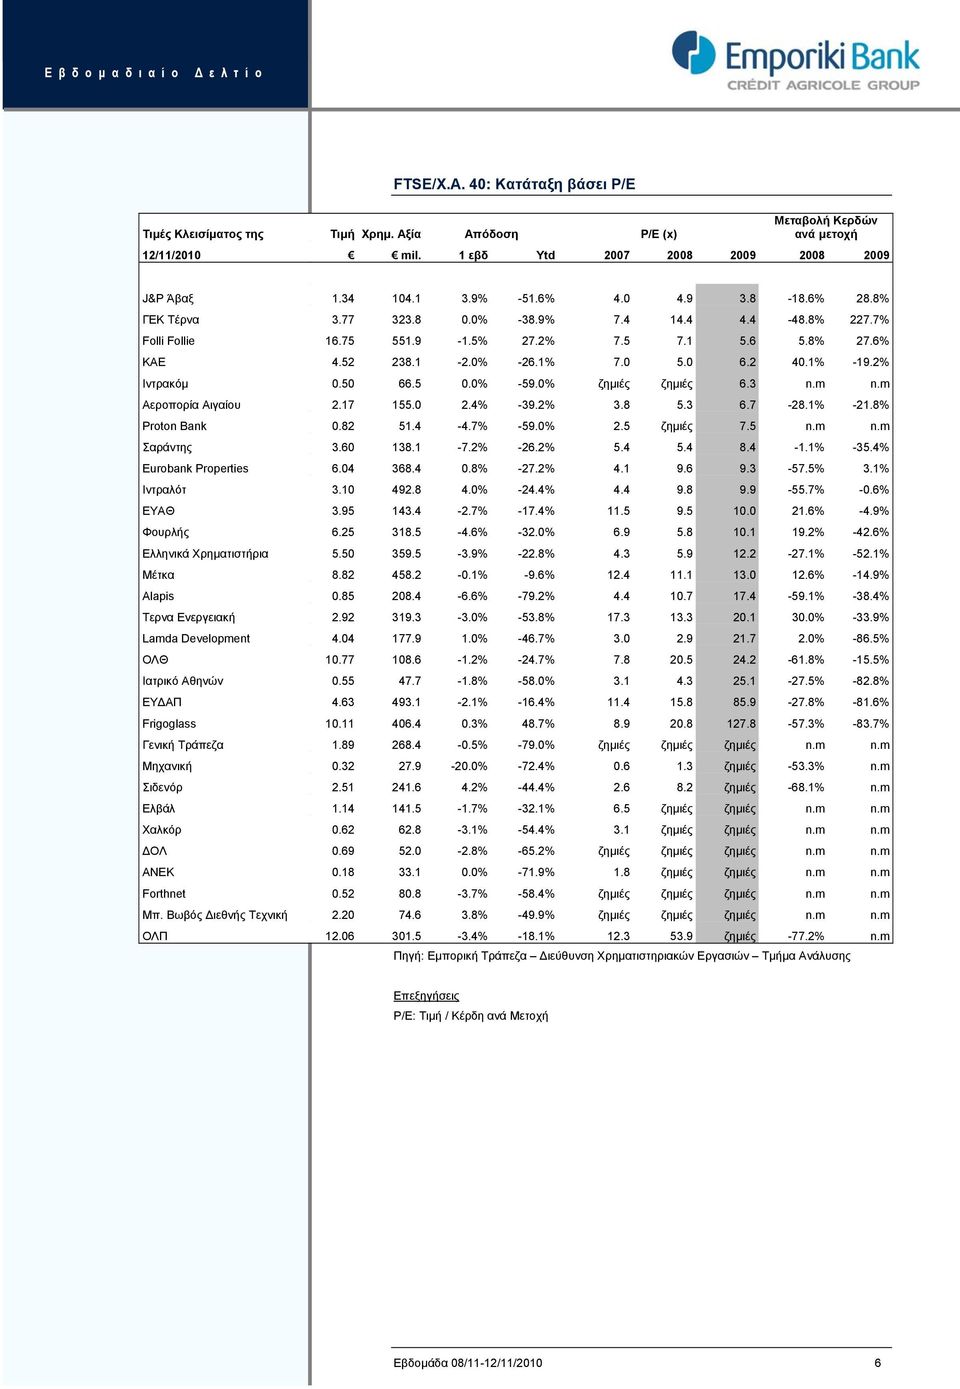 2% Ιντρακόμ 0.50 66.5 0.0% -59.0% ζημιές ζημιές 6.3 n.m n.m Αεροπορία Αιγαίου 2.17 155.0 2.4% -39.2% 3.8 5.3 6.7-28.1% -21.8% Proton Bank 0.82 51.4-4.7% -59.0% 2.5 ζημιές 7.5 n.m n.m Σαράντης 3.